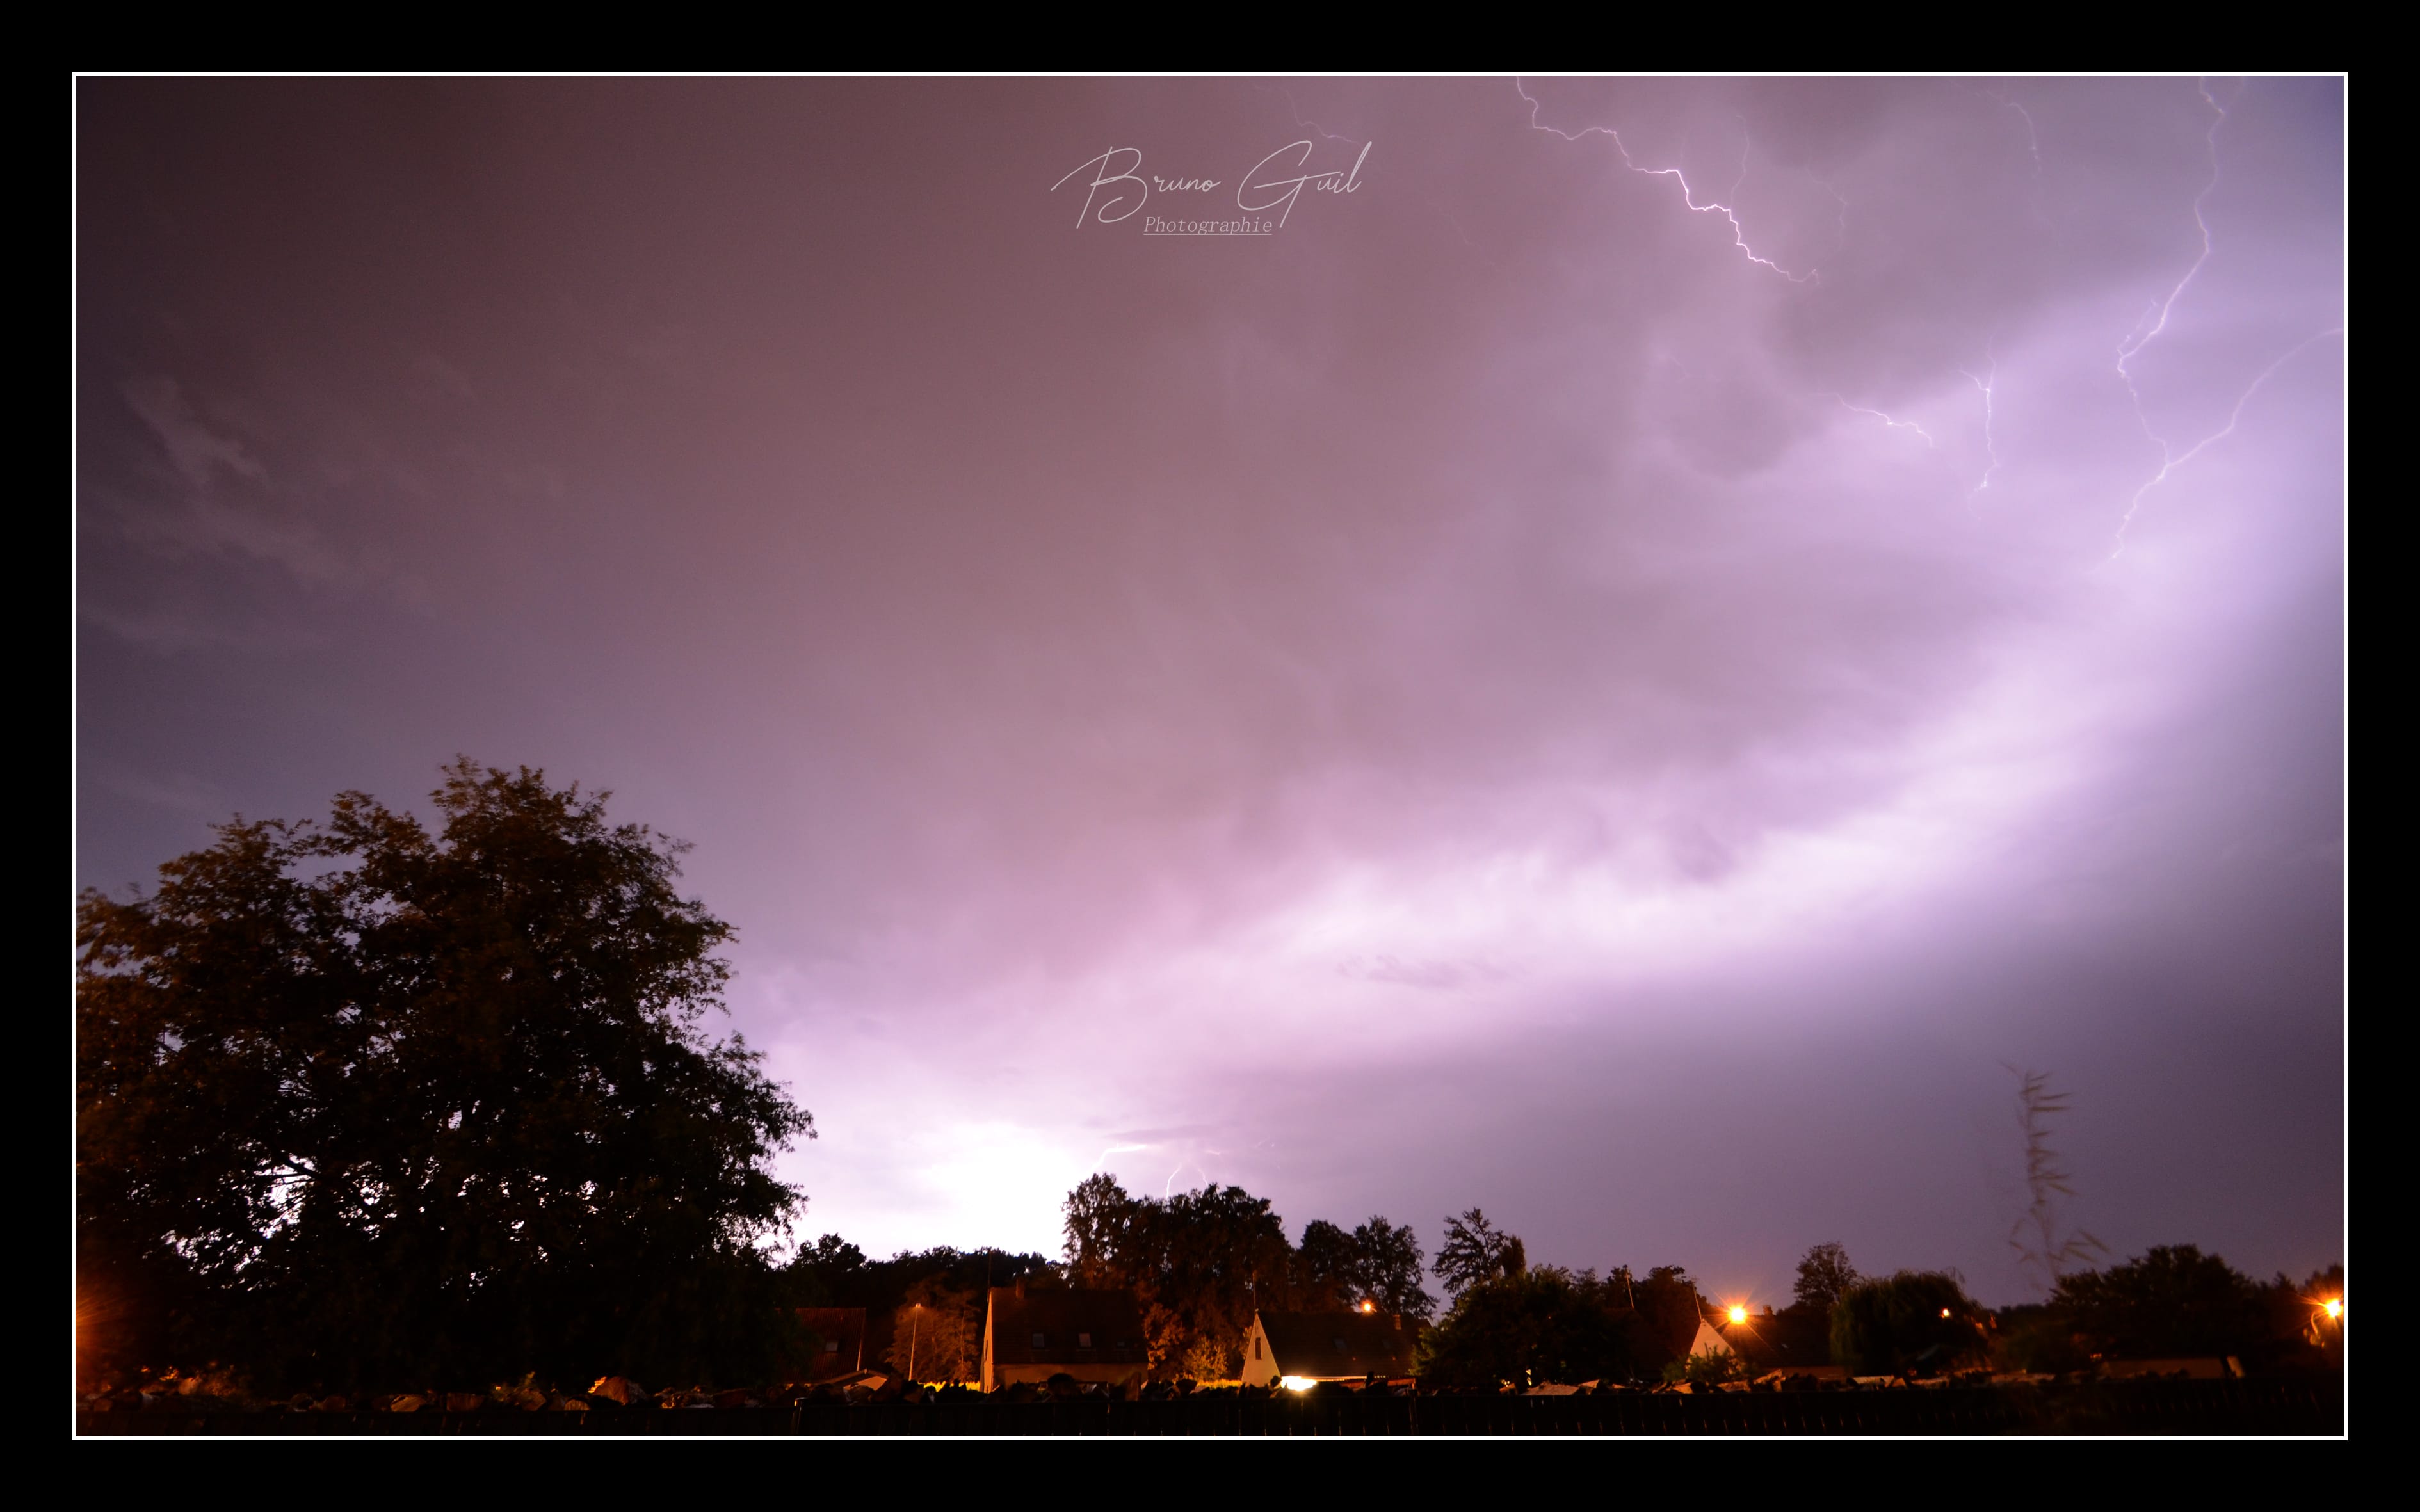 Ciel d'orage sur Montmacq (Oise) - 08/08/2020 23:05 - Bruno Guil